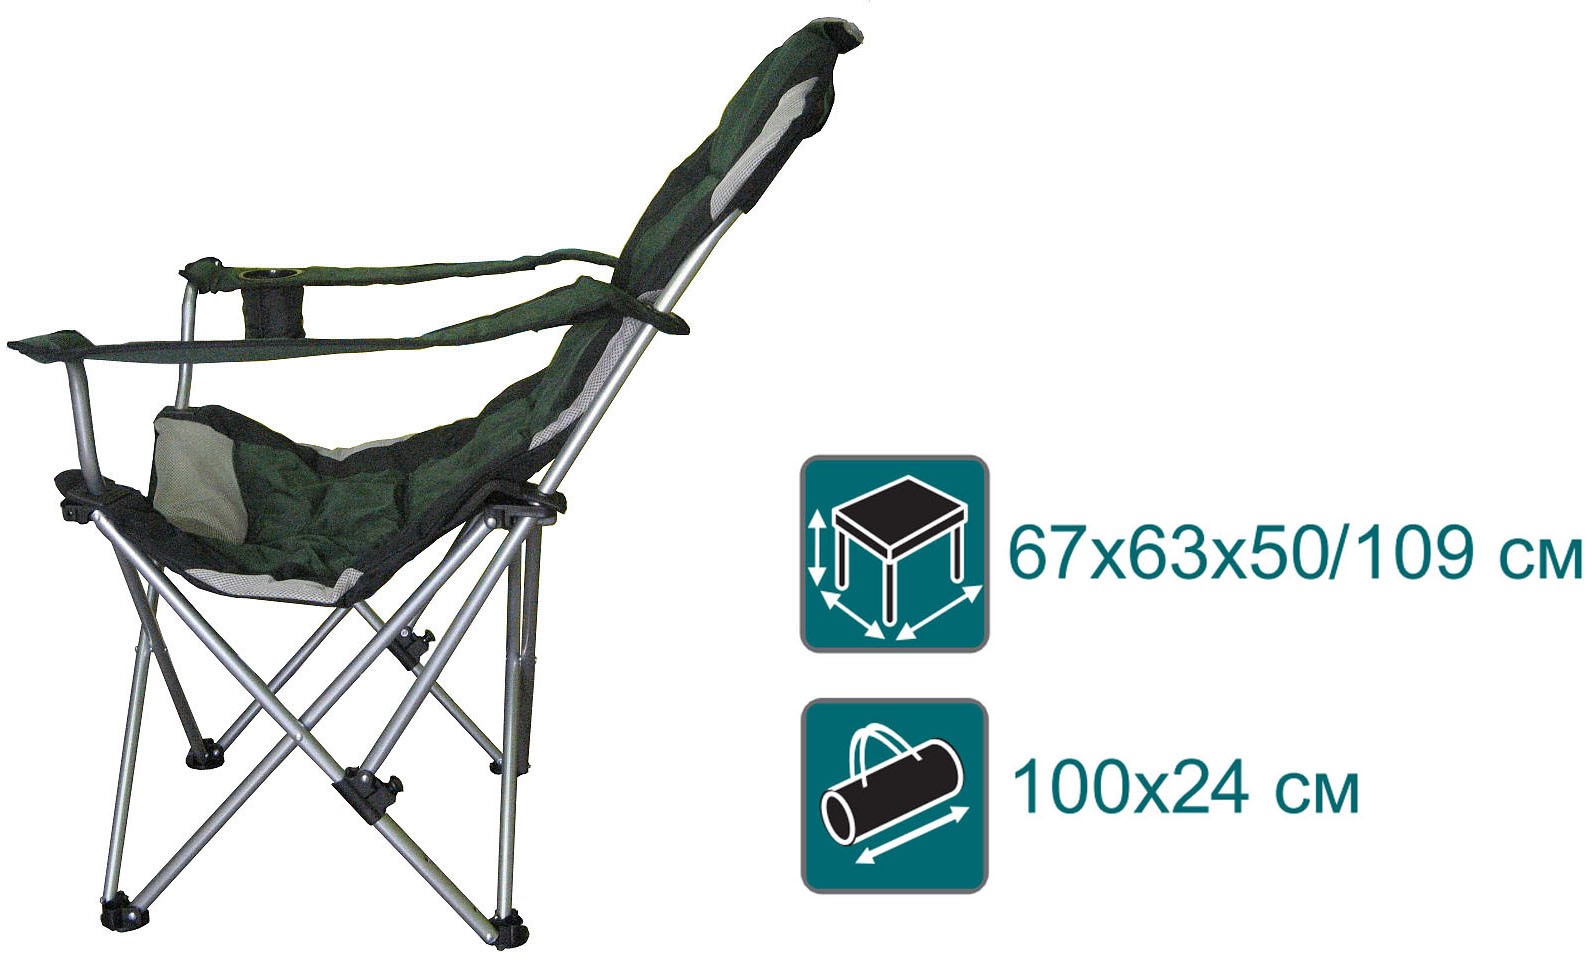 Складное кресло Canadian Camper CC-152 купить по оптимальной цене,  доставка по России, гарантия качества